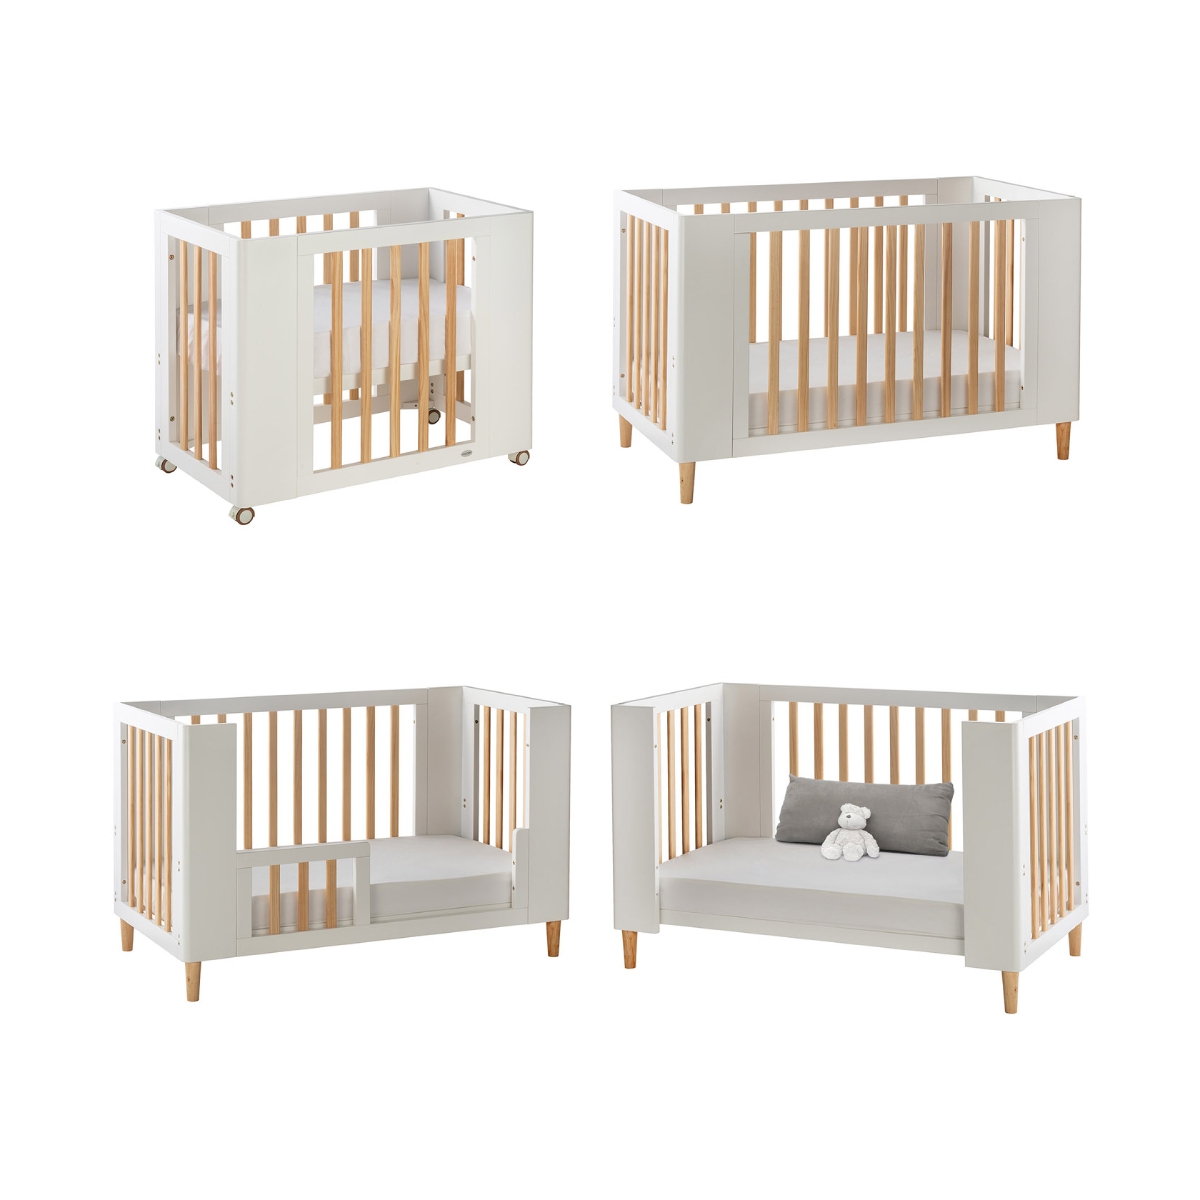 Cocoon Evoke 4-in-1 Nursery Furniture System